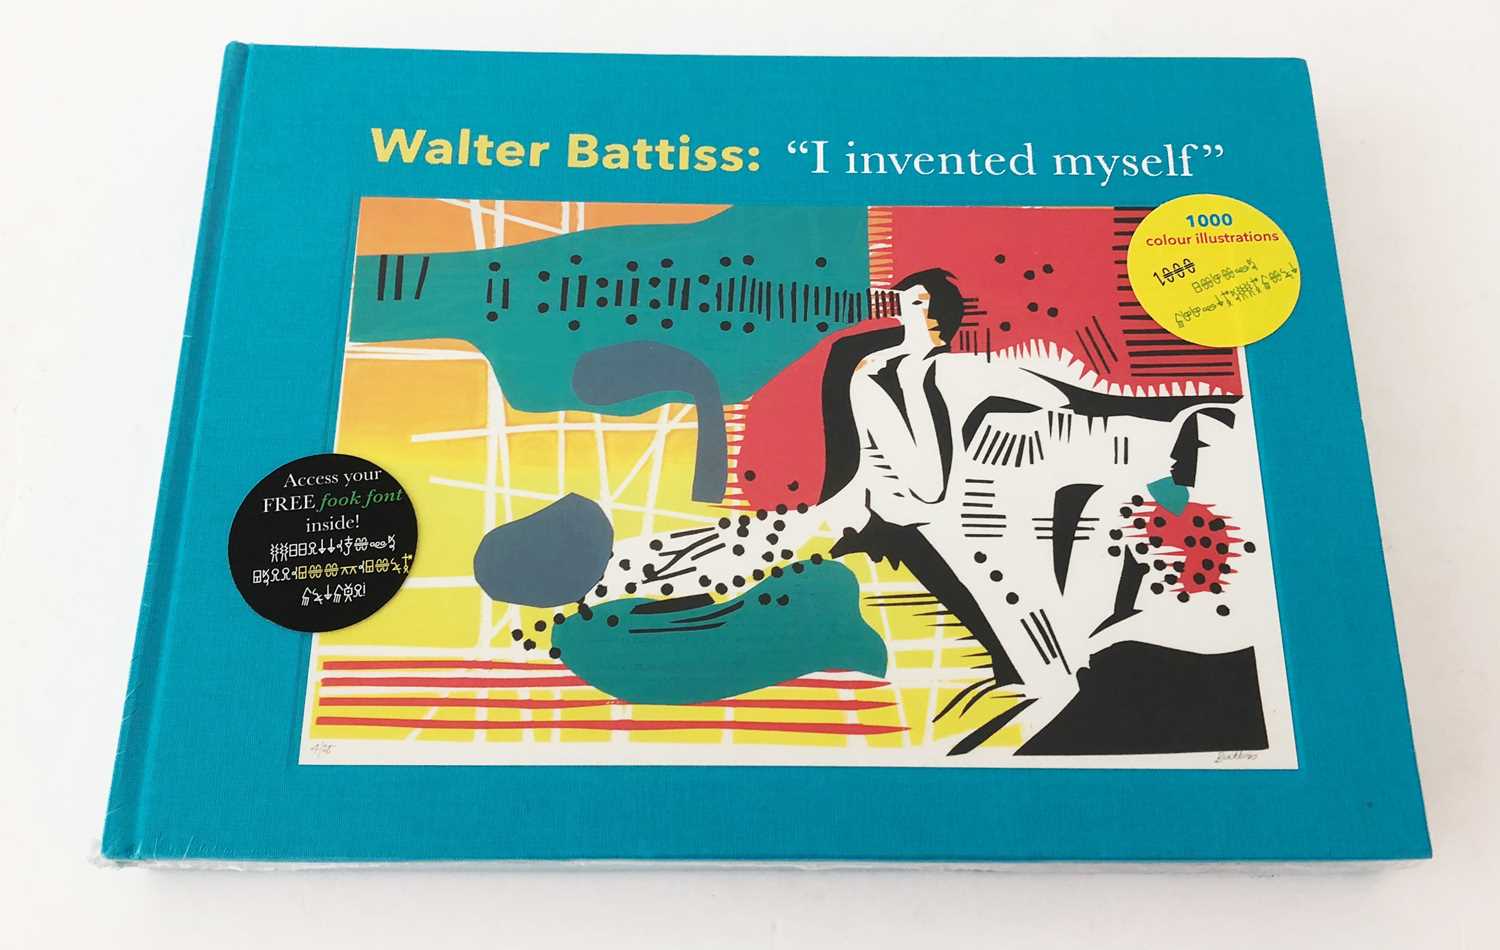 Lot 11 - Siebrits, Warren. Walter Battiss: "I invented myself"